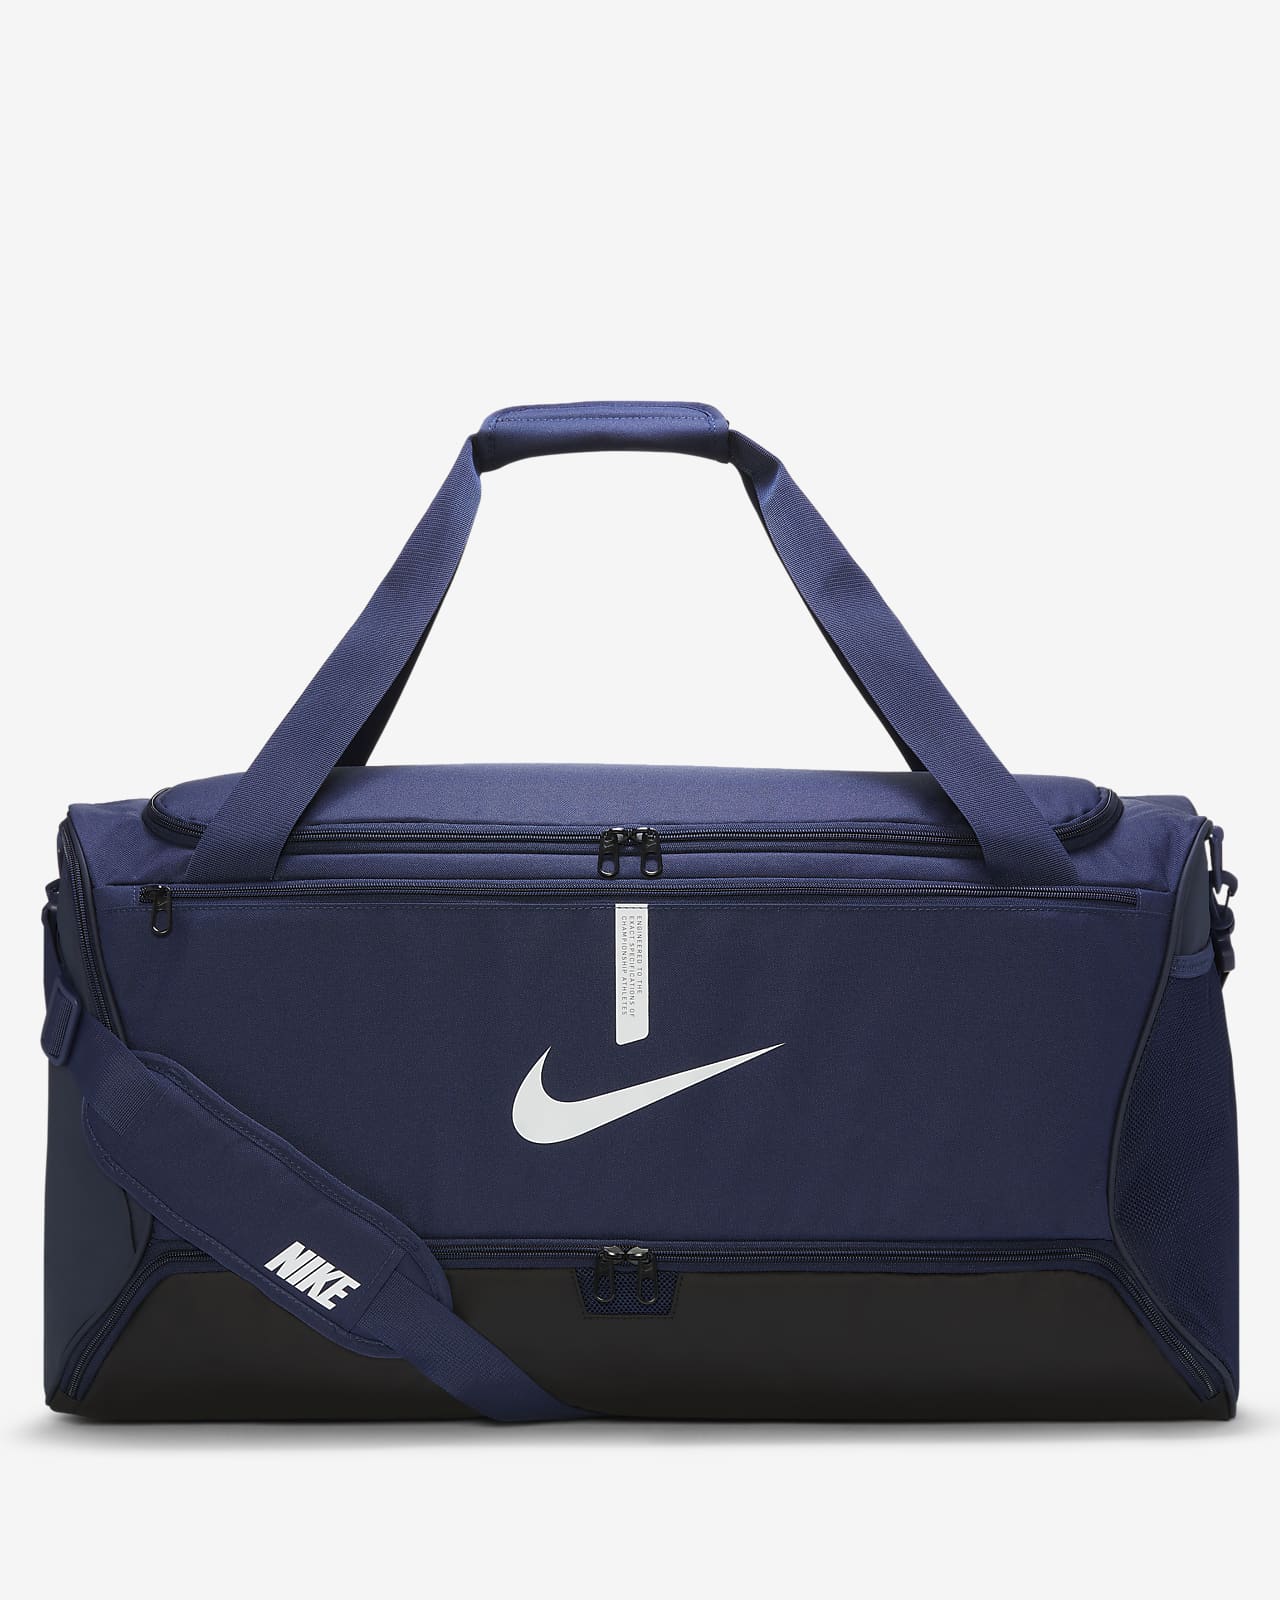 Τσάντα γυμναστηρίου για ποδόσφαιρο Nike Academy Team (μέγεθος Large, 95 L)